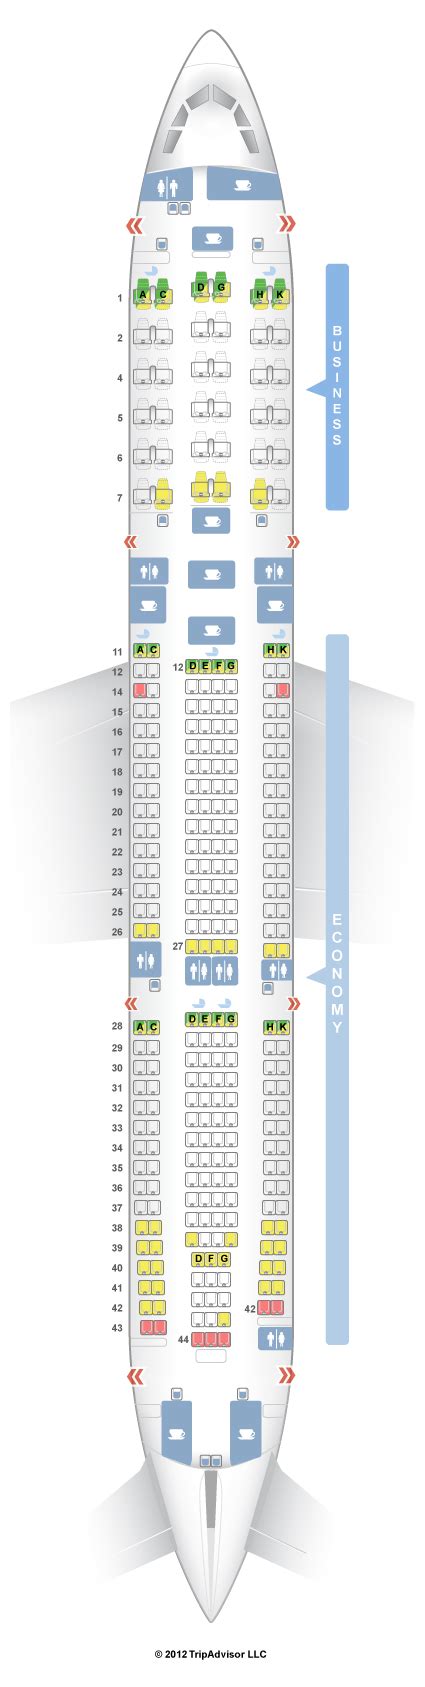 Seatguru Seat Map Malaysia Airlines Airbus A330 300 333 Seatguru